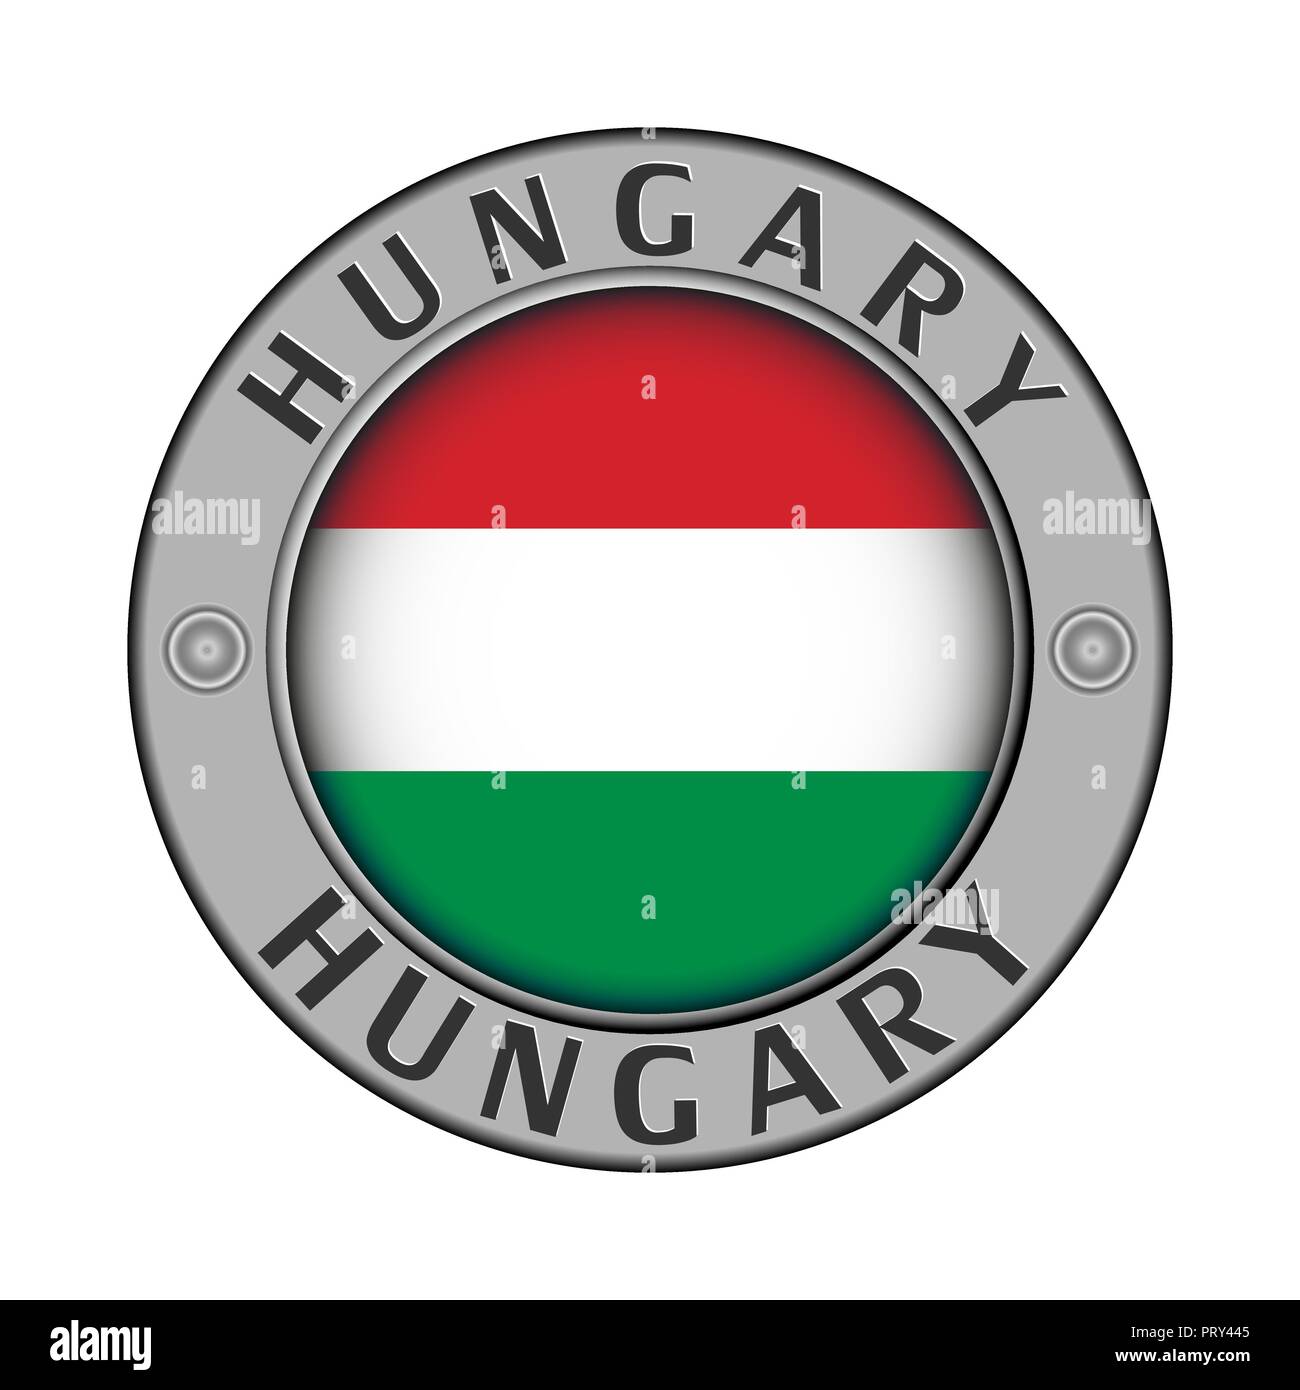 Rotondo di metallo medaglione con il nome del paese di Ungheria e un indicatore rotondo nel centro Illustrazione Vettoriale